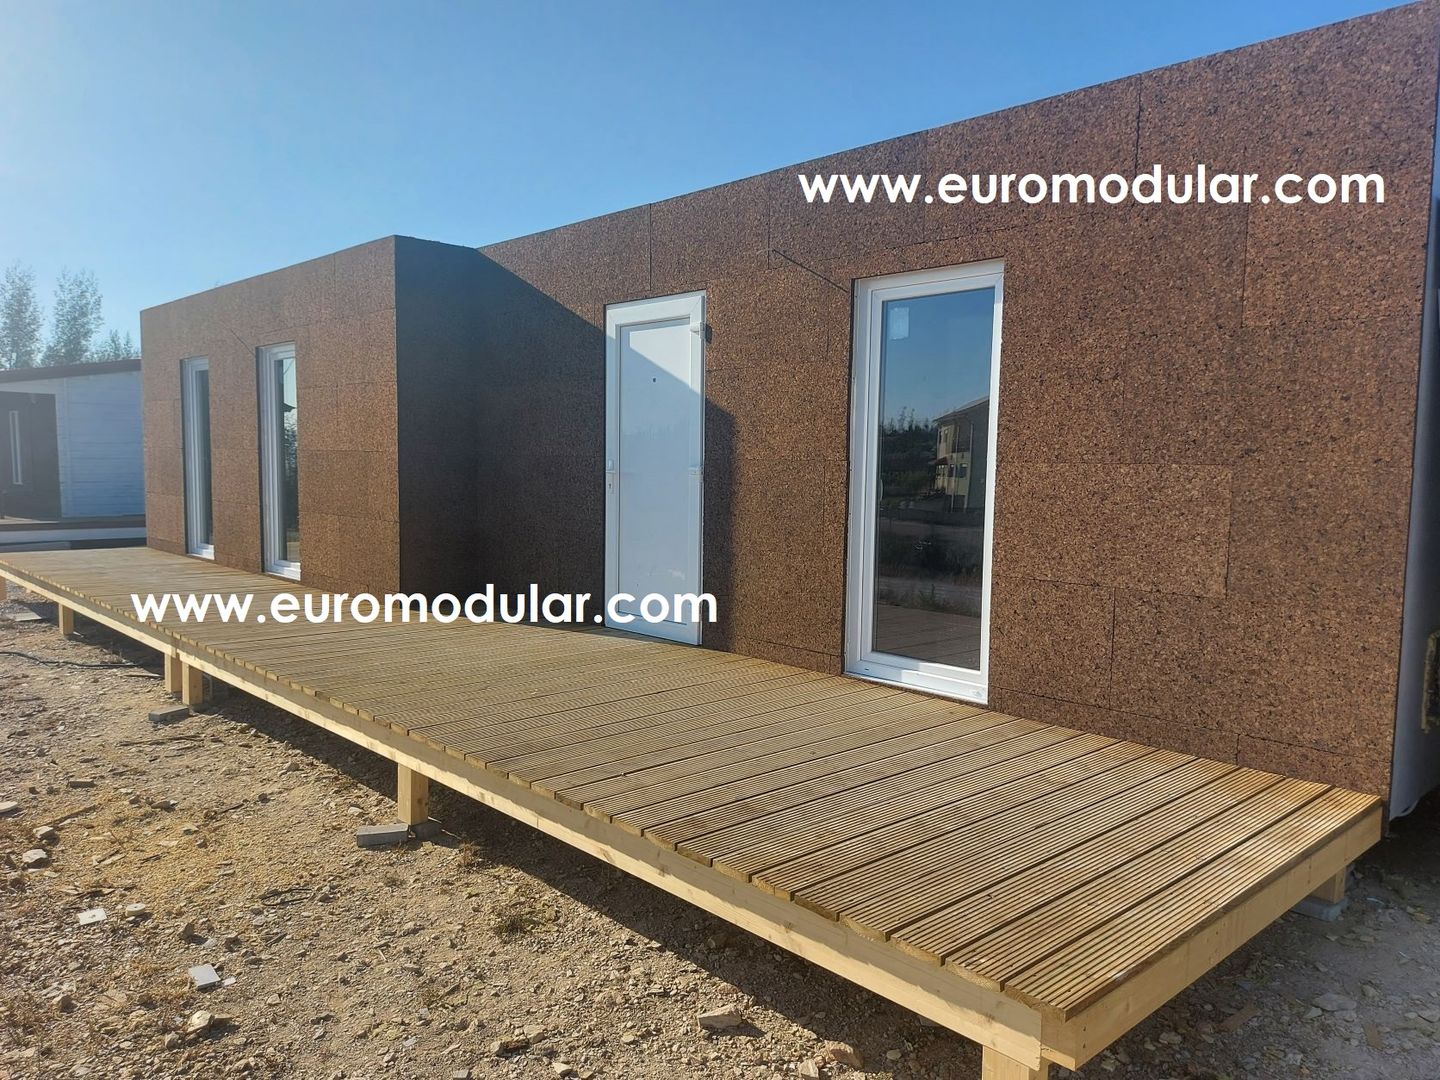 T1 Casa Modular Prefabricada (estrutura metálica), EUROMODULAR EUROMODULAR Casas prefabricadas